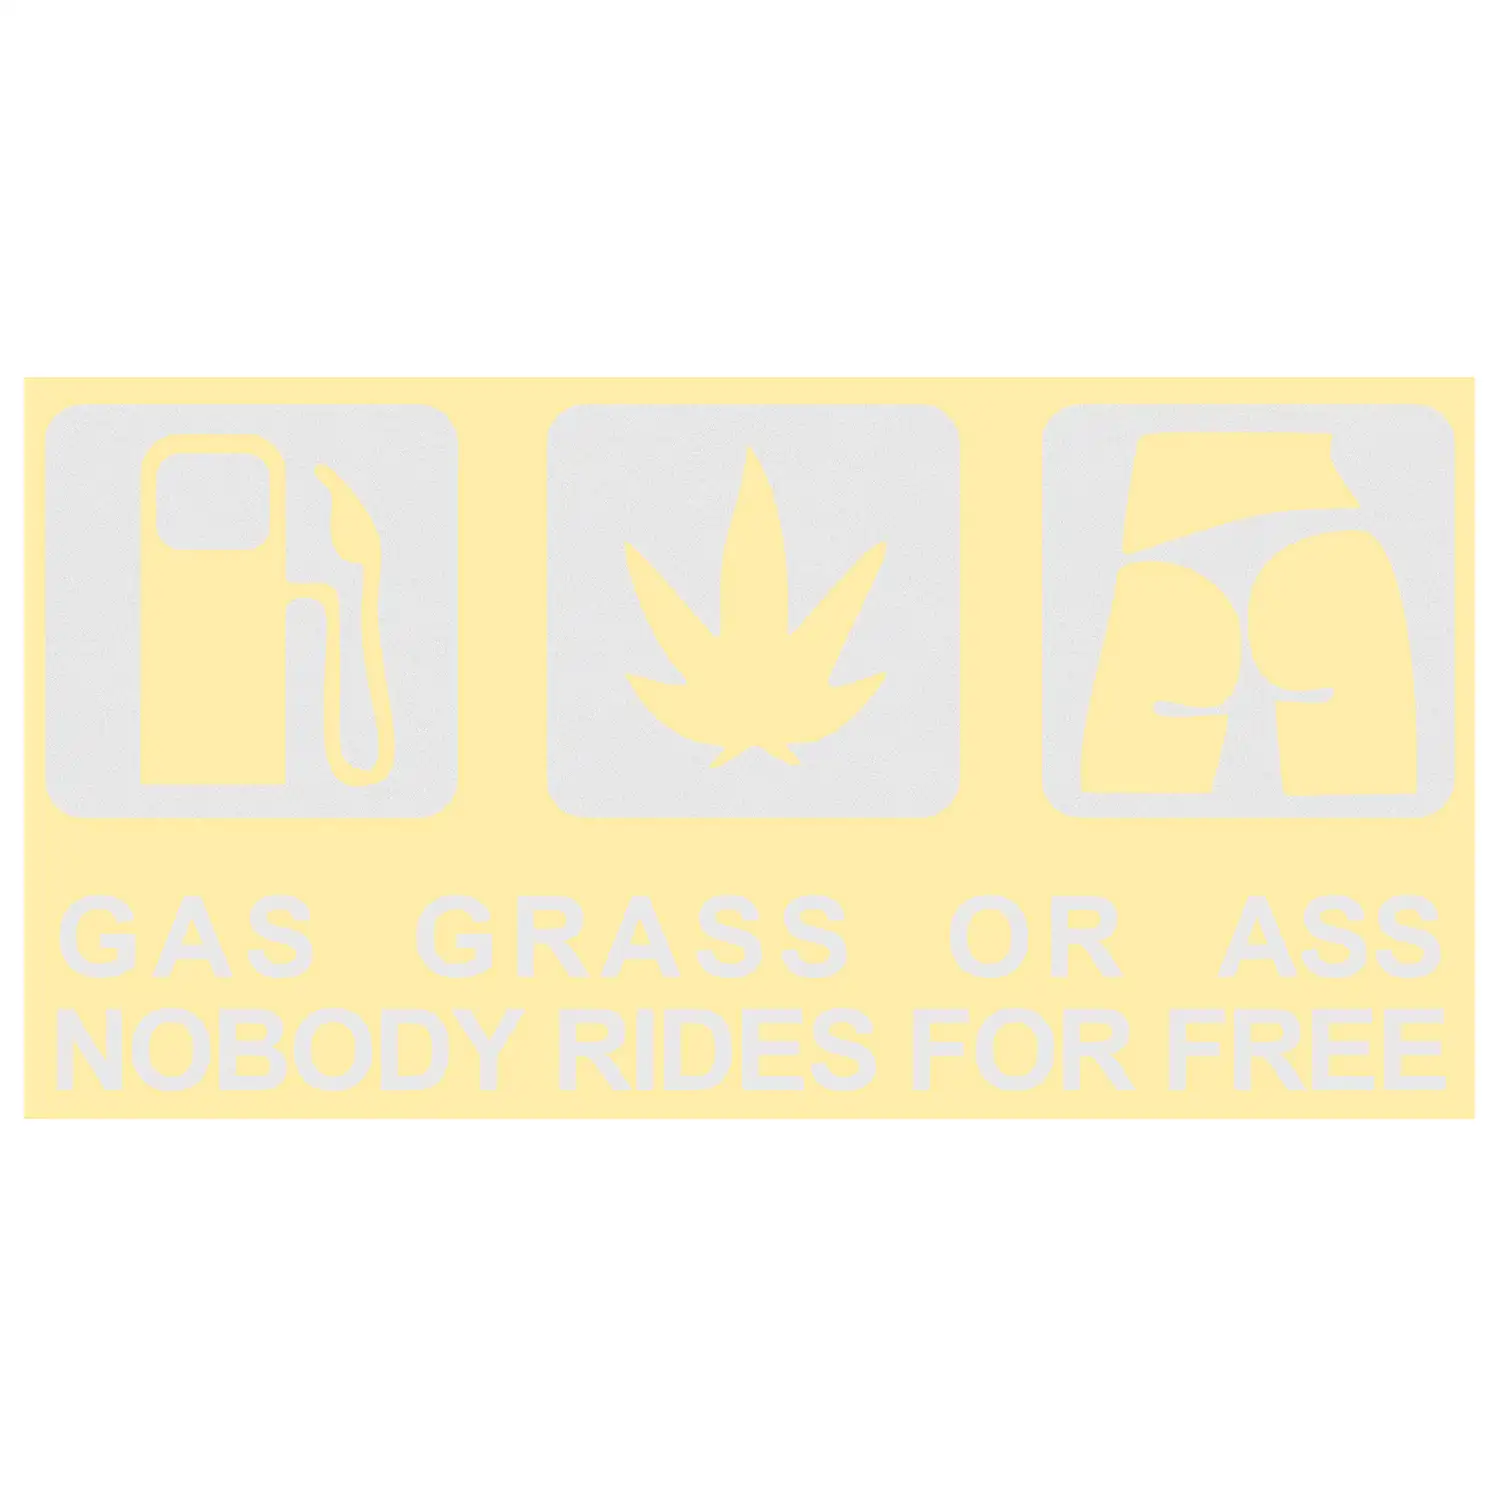 Gass Grass or Ass Sticker